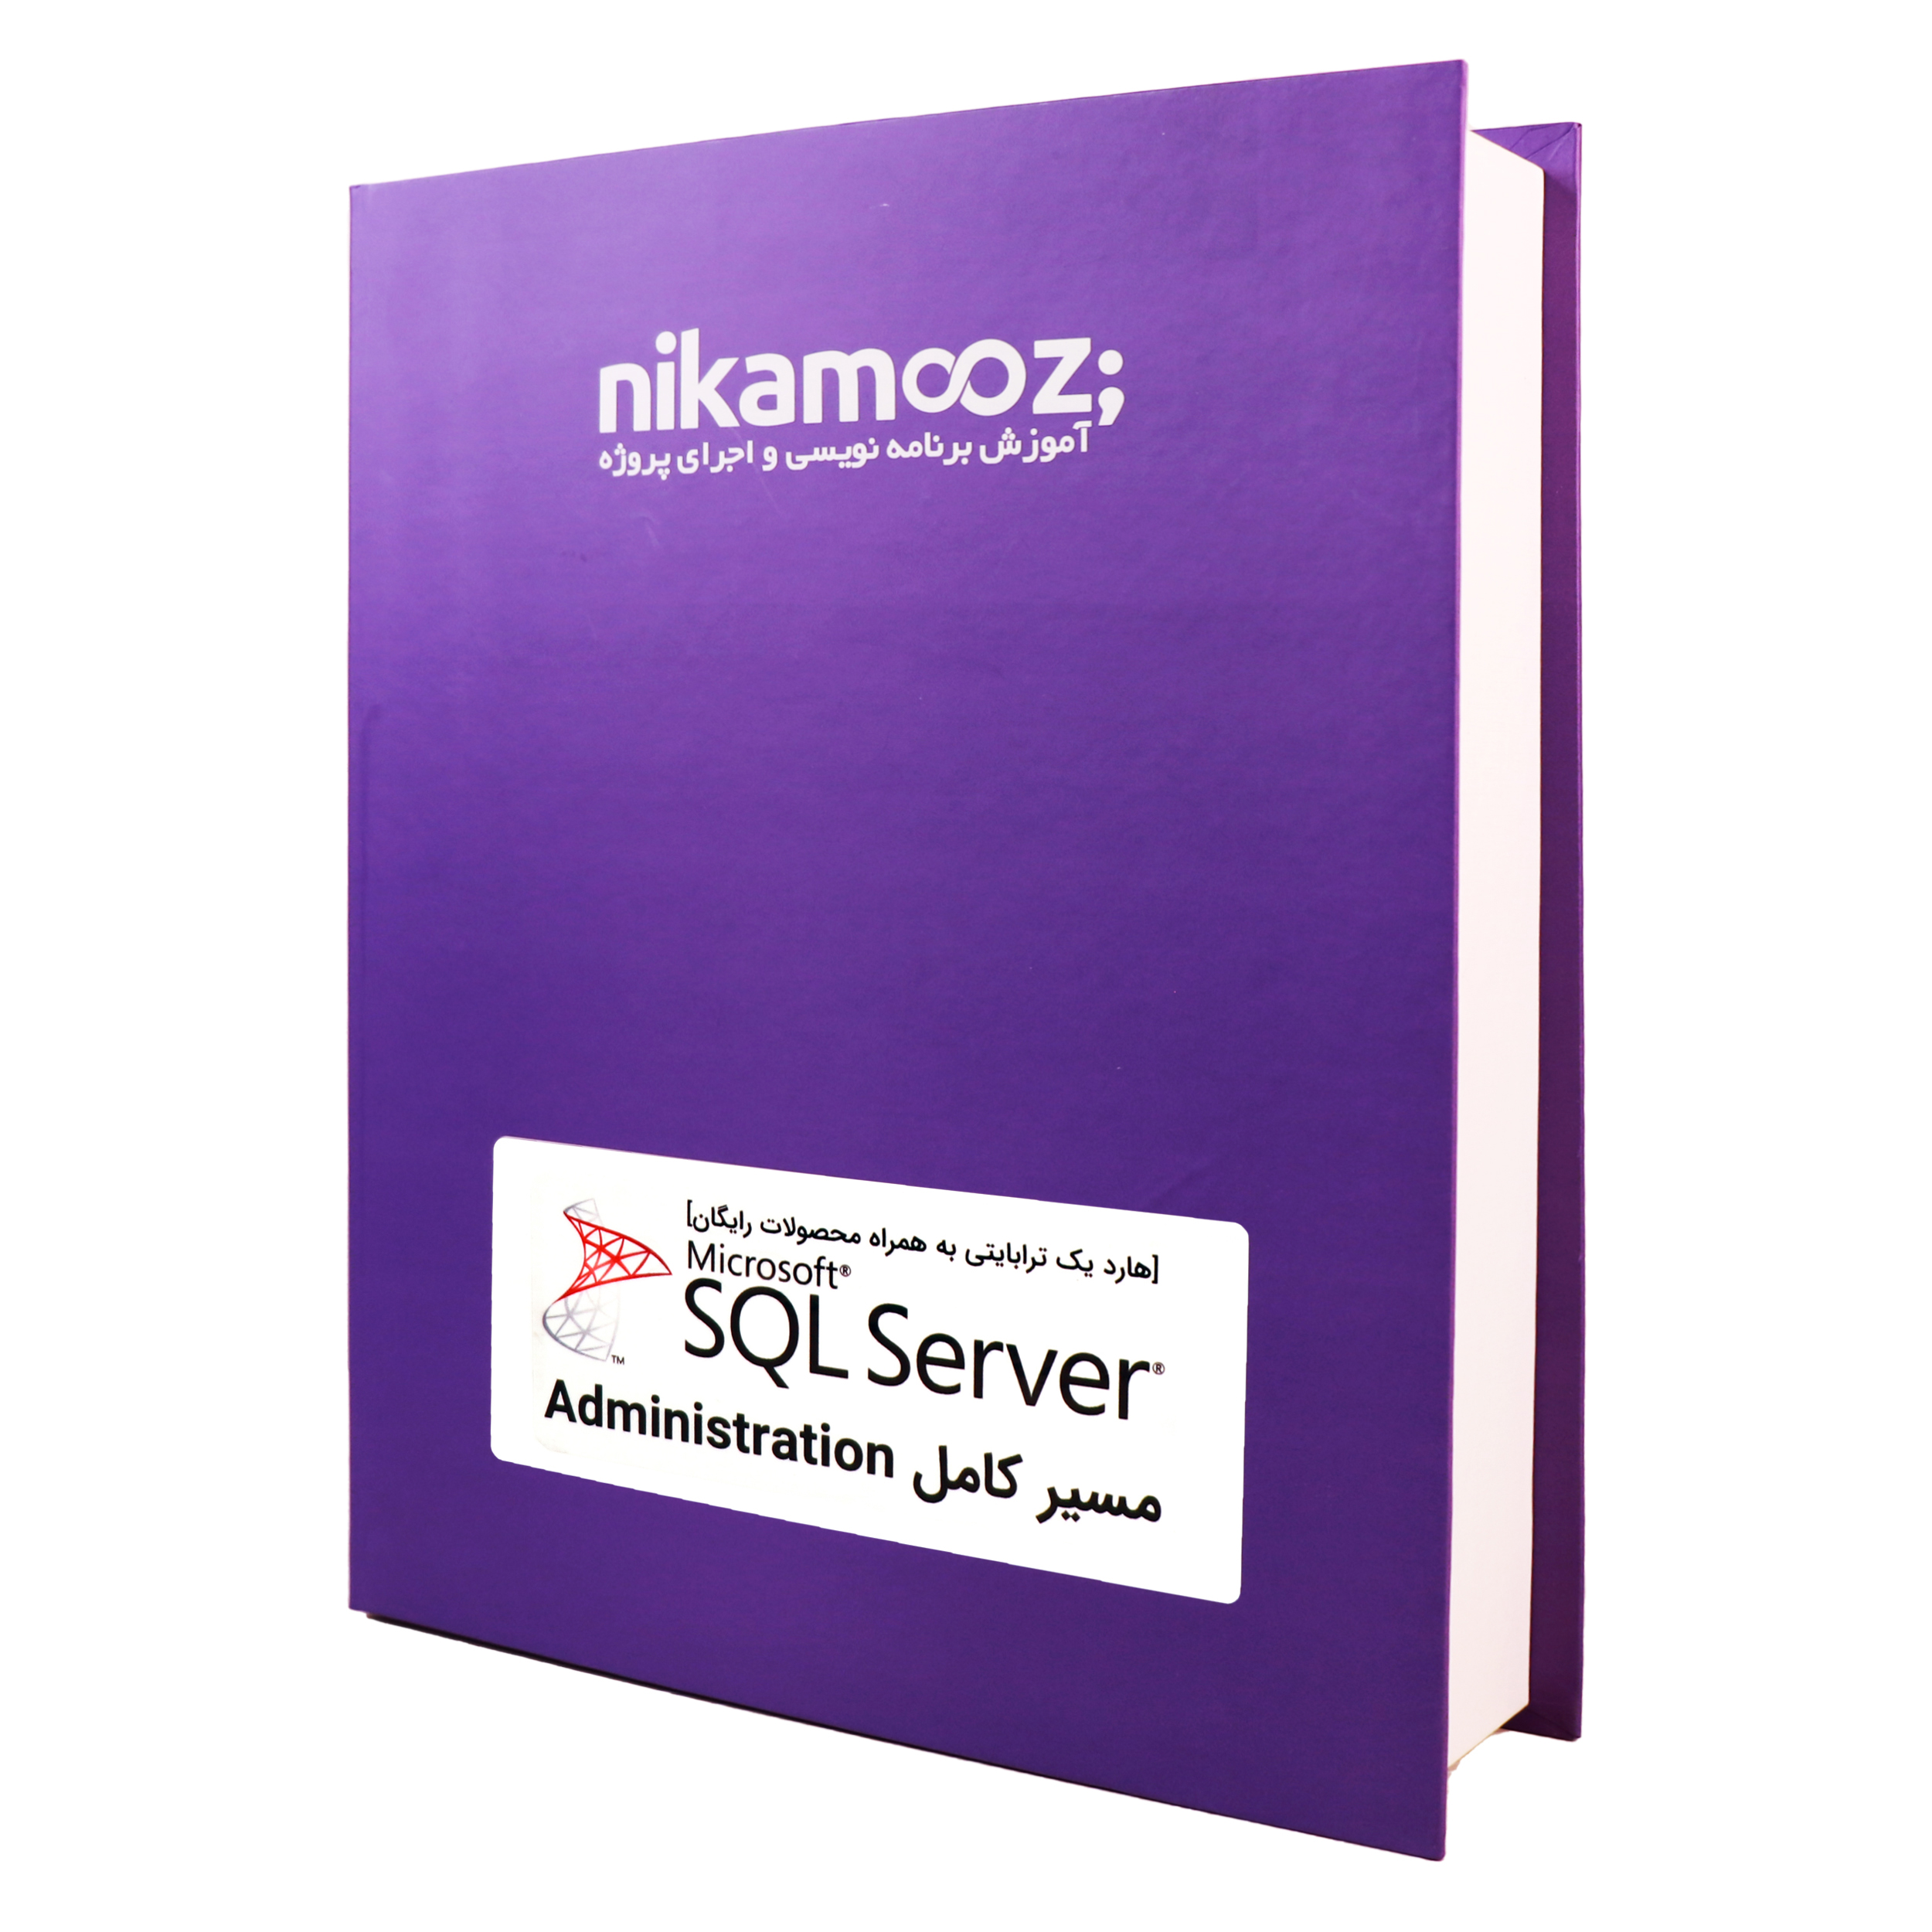 بسته مسیر آموزش SQL Server ویژه مدیران بانک اطلاعاتی نشر نیک آموز